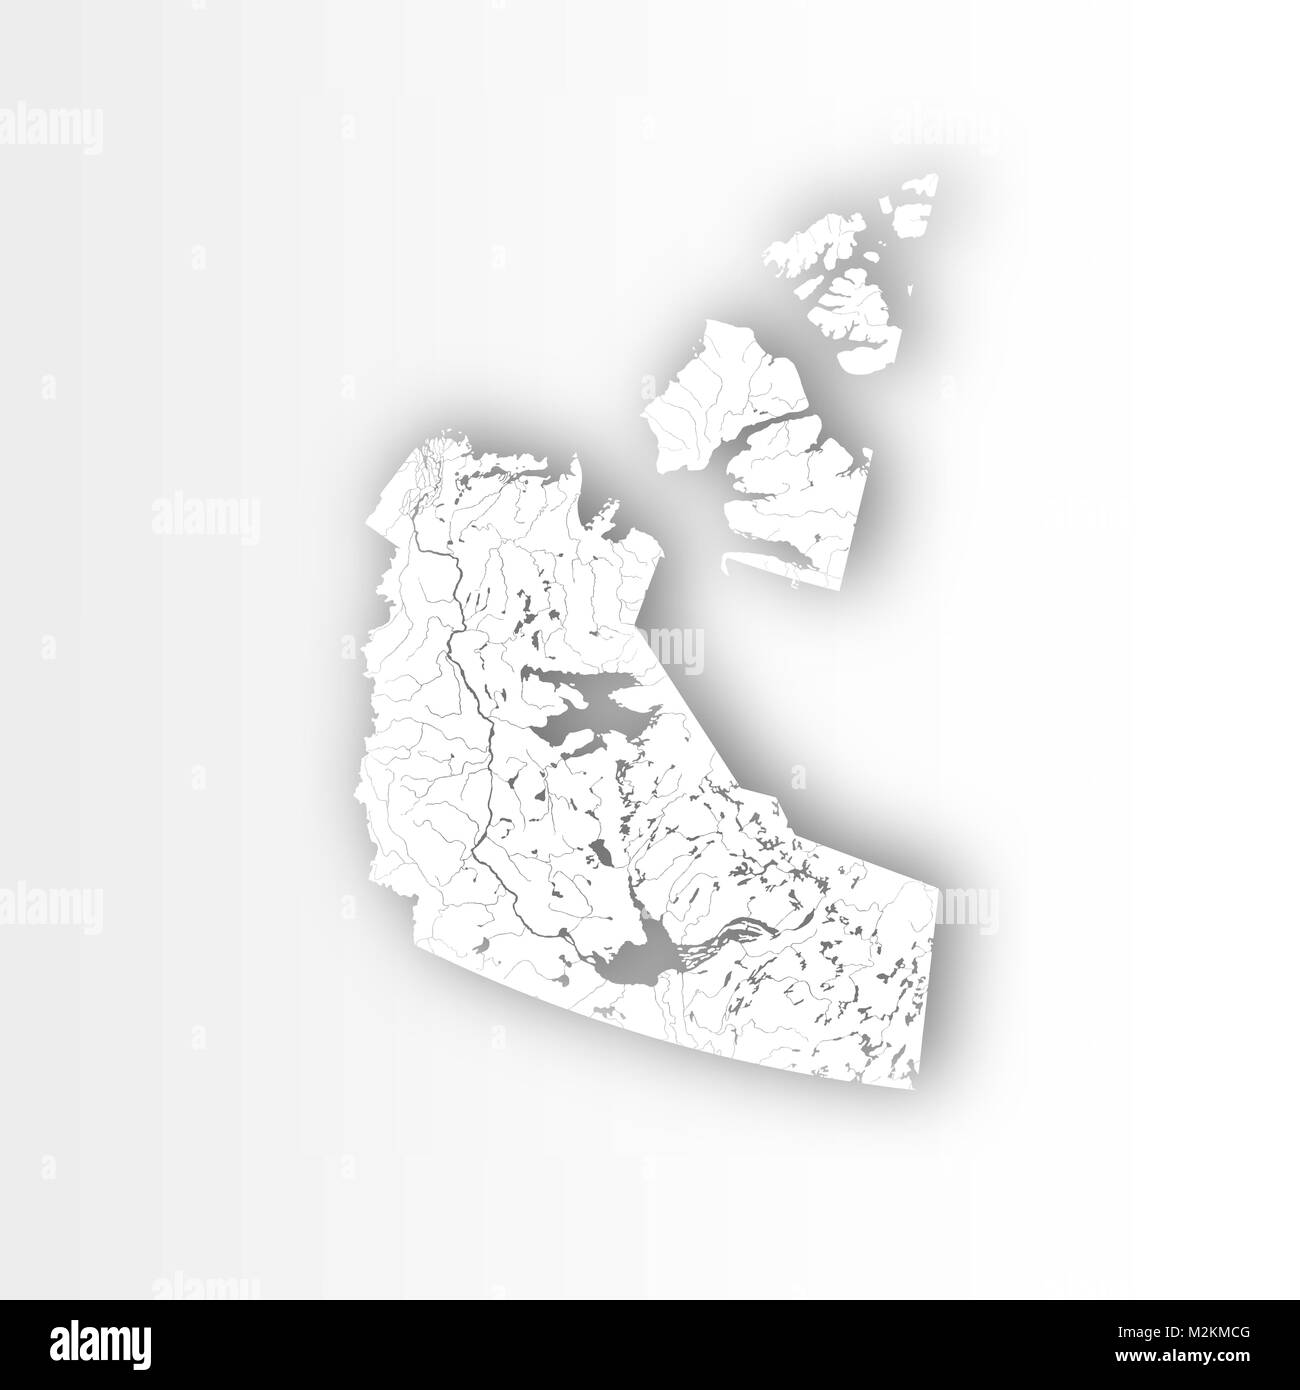 Provinzen und Territorien Kanadas - Karte von Northwest Territories mit Papier schneiden. Flüsse und Seen sind dargestellt. Bitte sehen Sie sich meine anderen Bilder o Stock Vektor